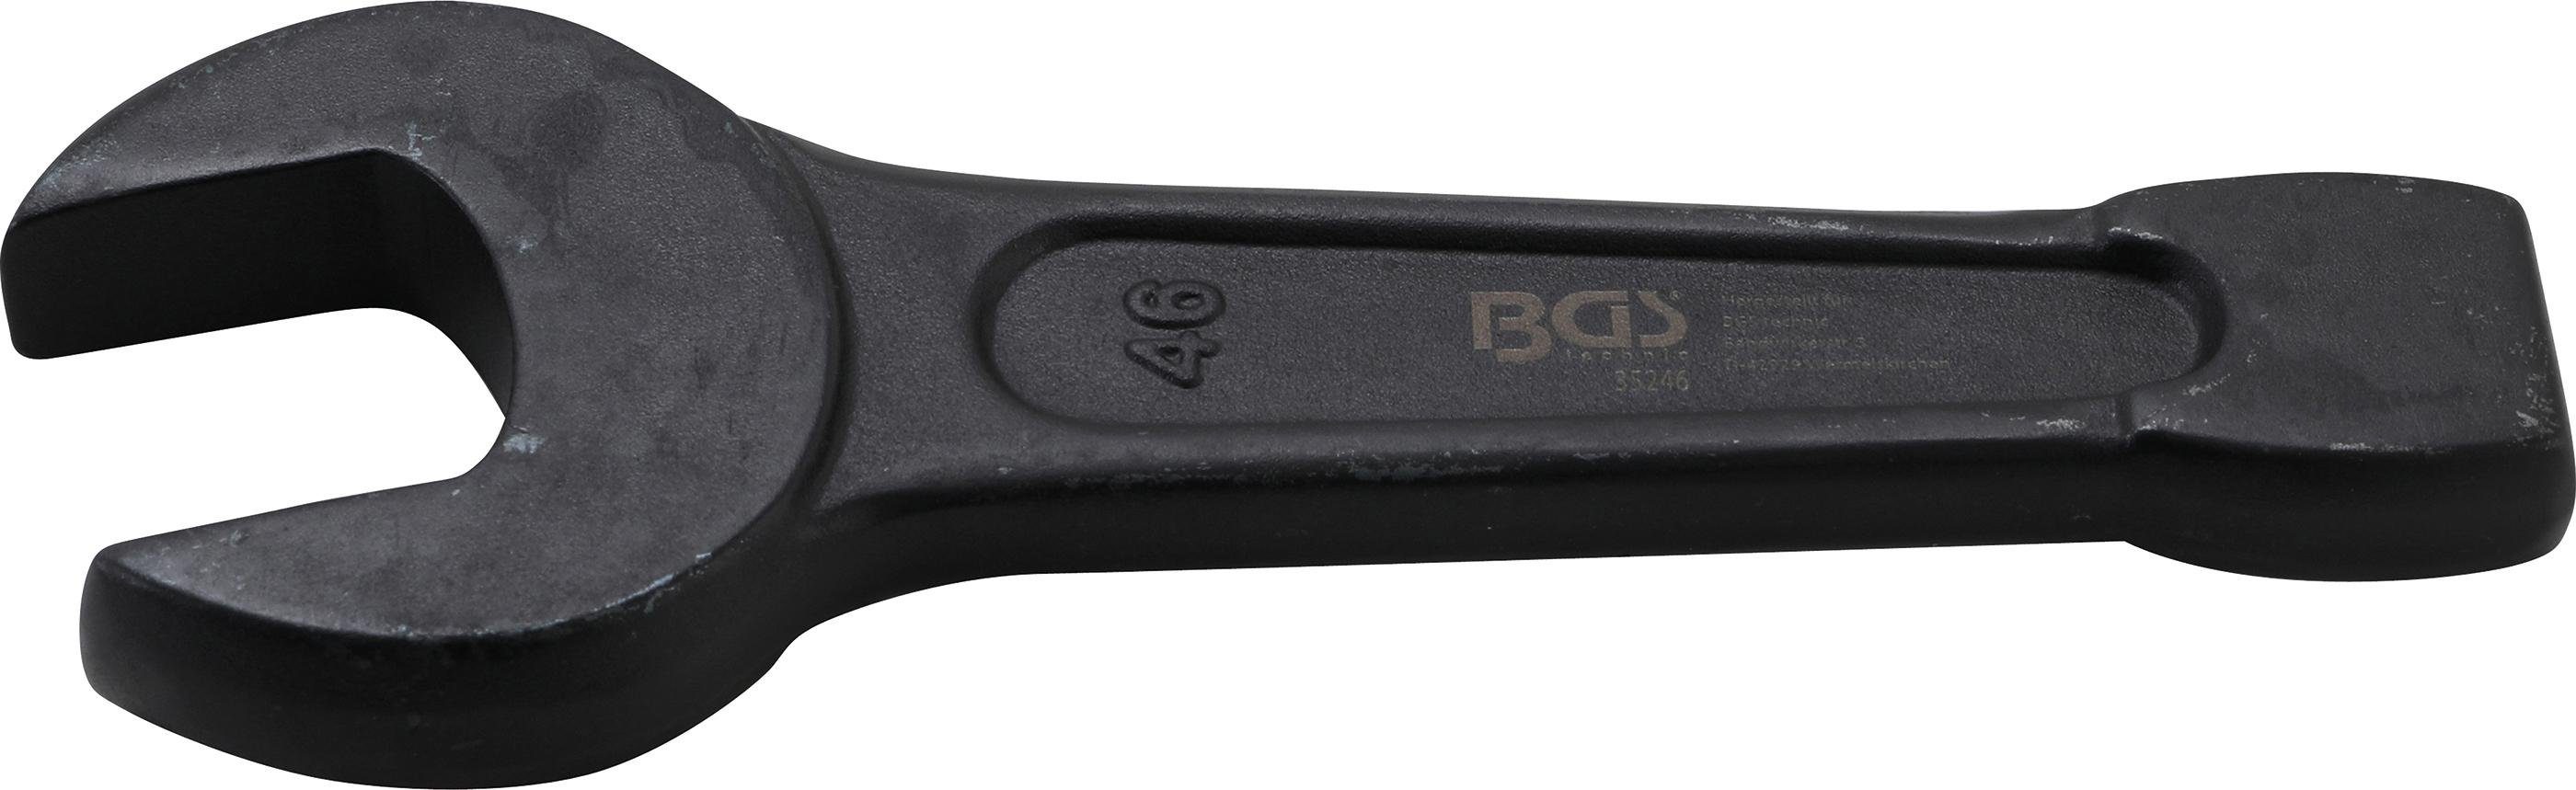 BGS technic Maulschlüssel Schlag-Maulschlüssel, SW 46 mm